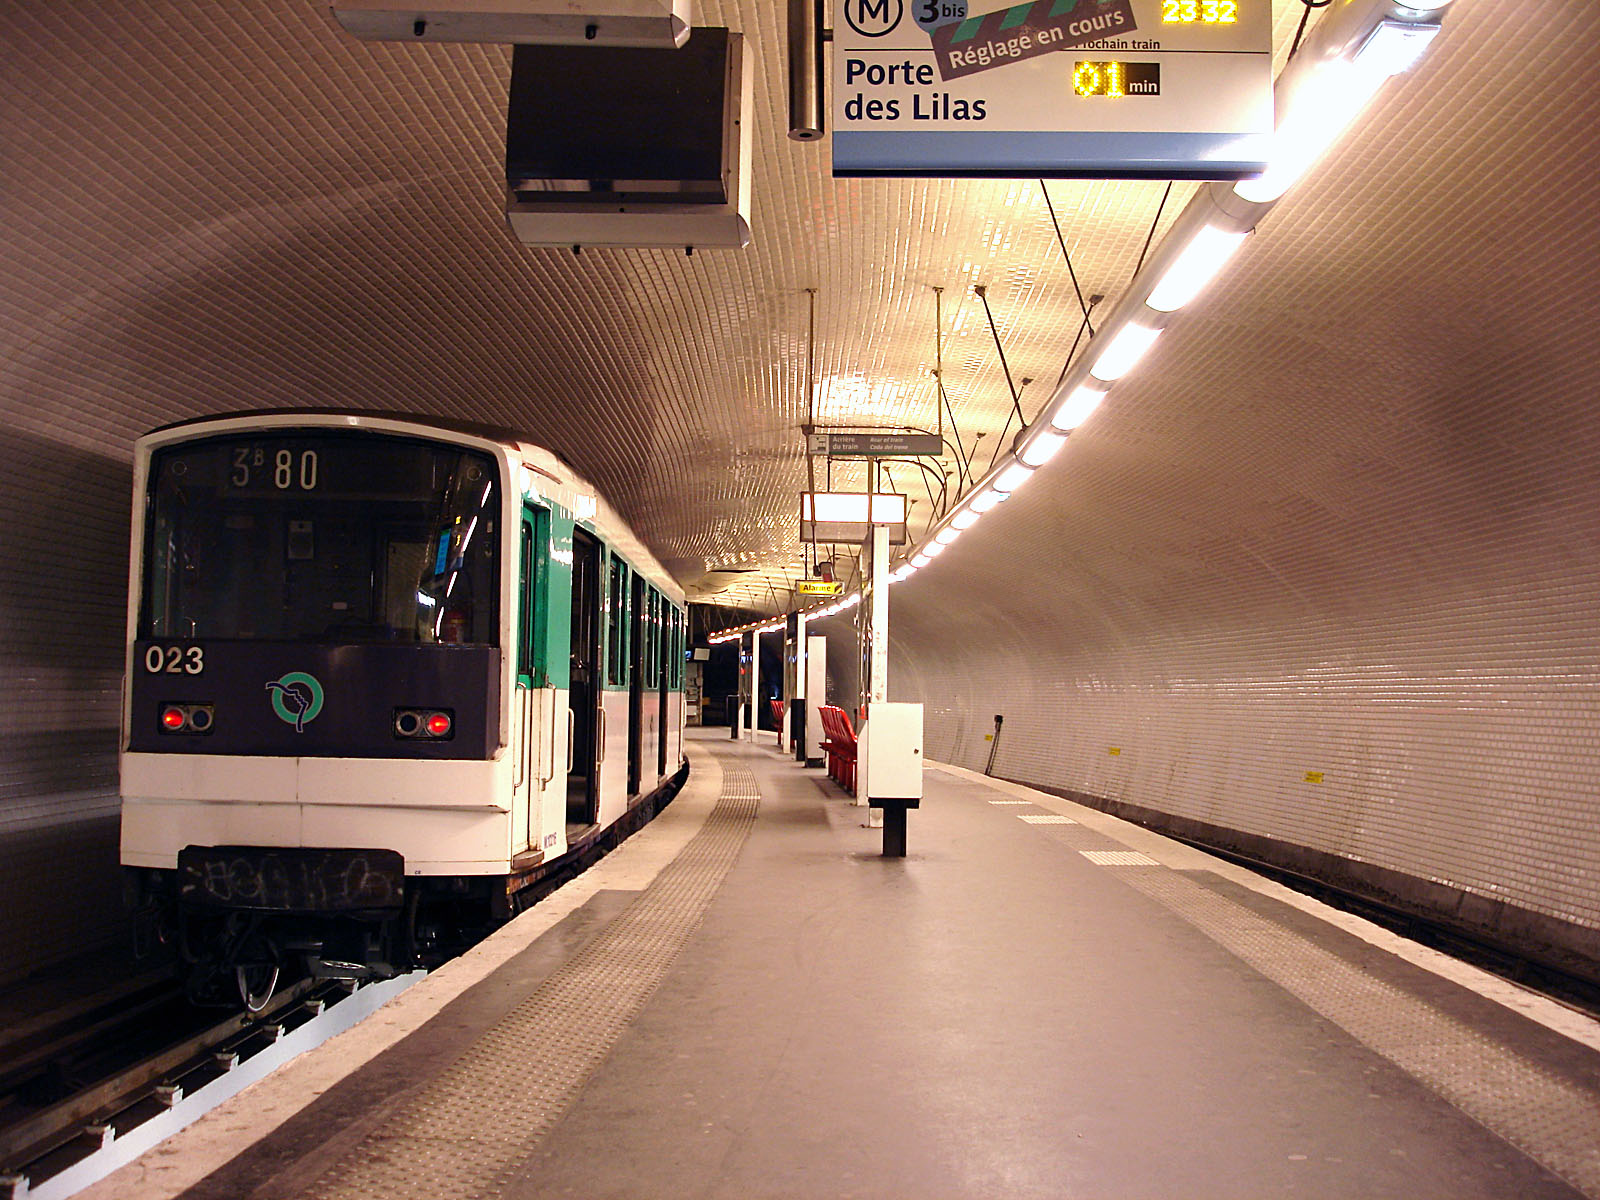 巴黎地铁6万盏照明灯北碚造 - 海外动态 - 世界轨道交通资讯网-艾莱轨道资讯